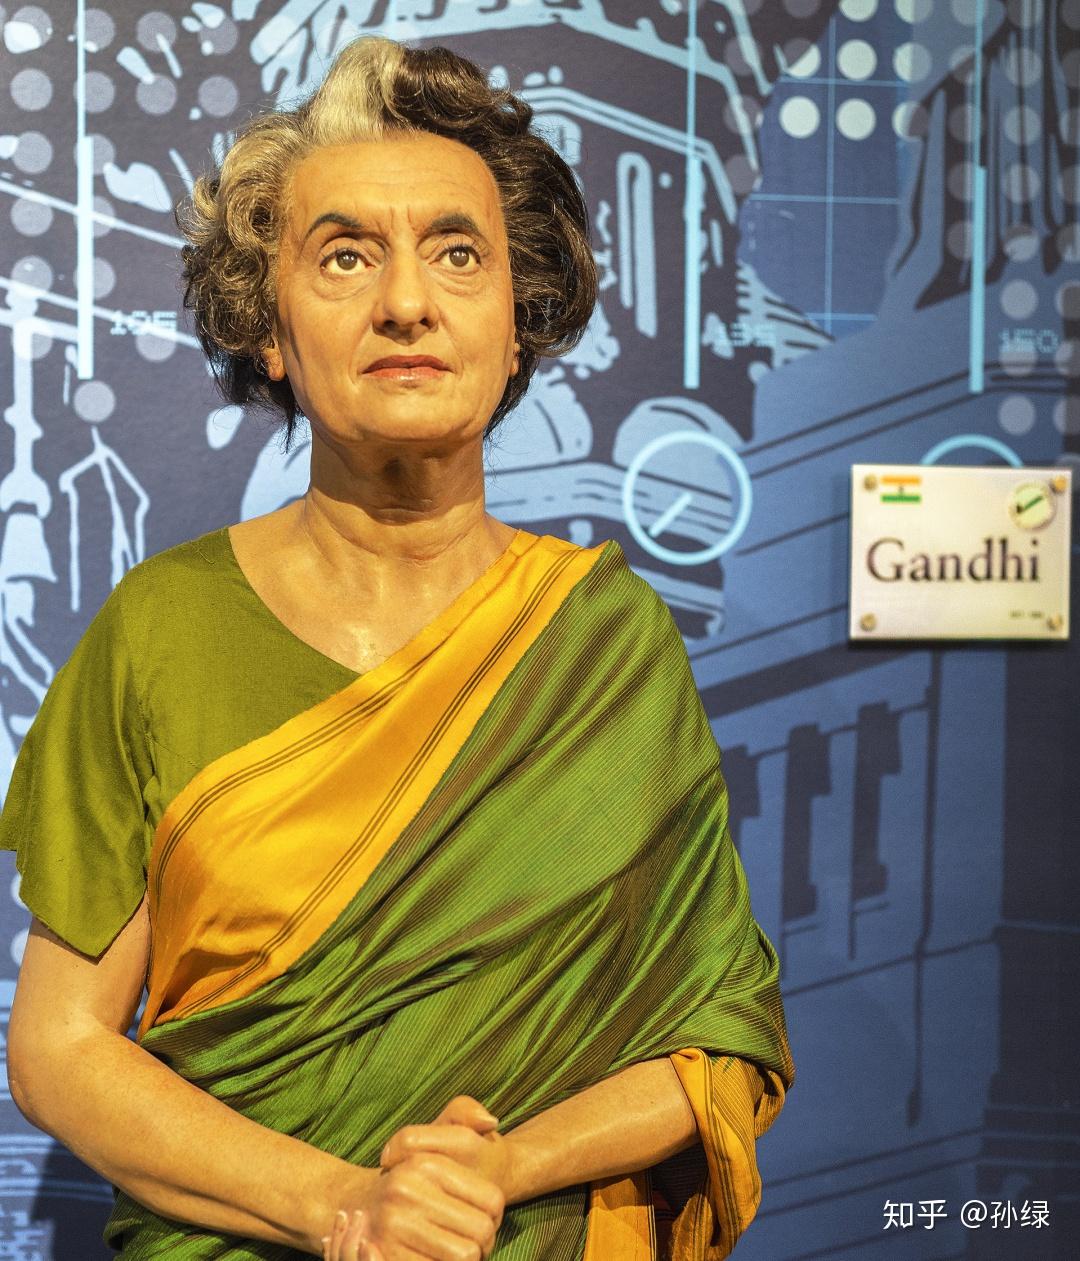 绿色革命1965年,尼赫鲁的女儿英迪拉·甘地接任总理职务,印度开启了